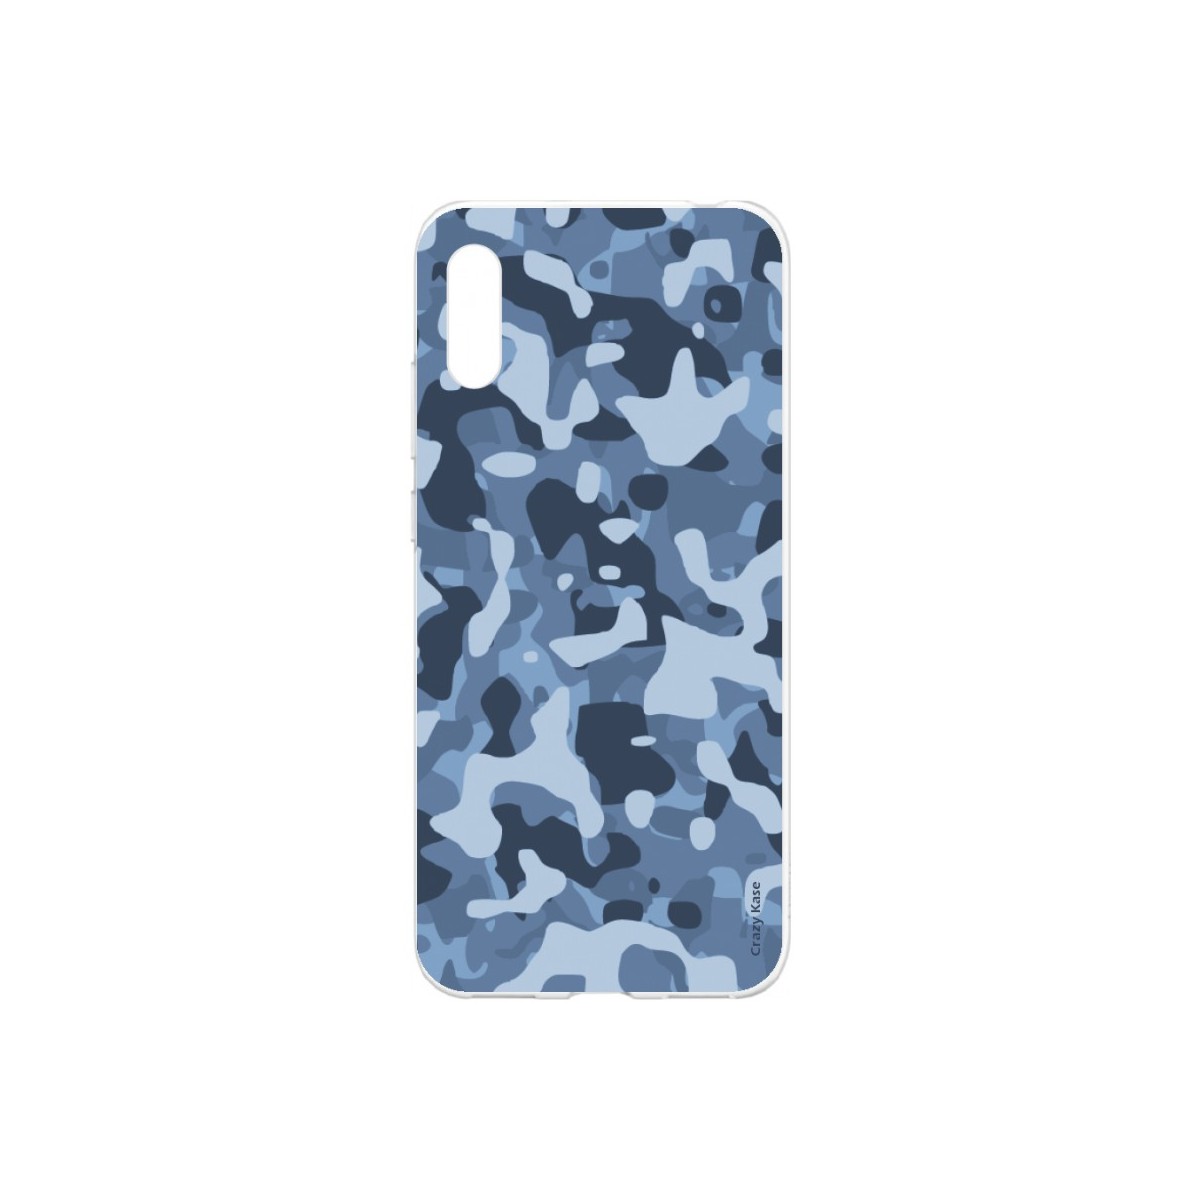 Coque Huawei Y6 2019 souple Camouflage militaire bleu Crazy Kase